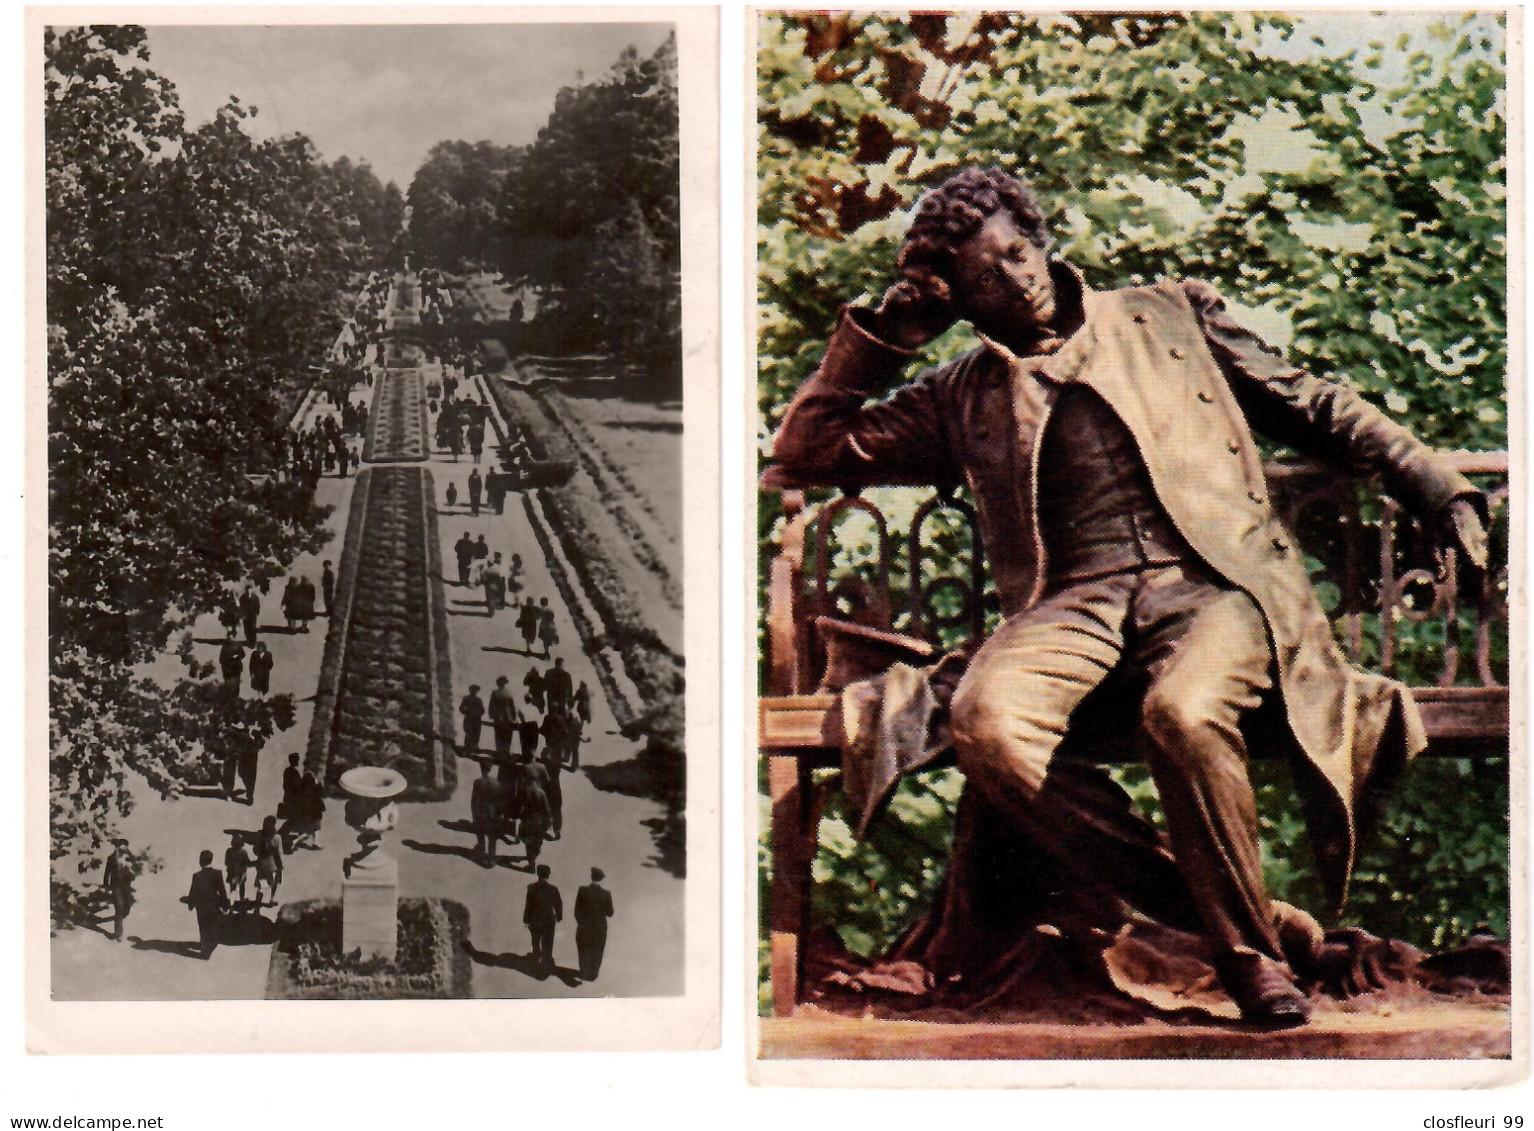 2 Cartes Postales Avec Censure Soviétique En 1951 / Pour Lausanne Suisse / Parc De Léningrad - Storia Postale